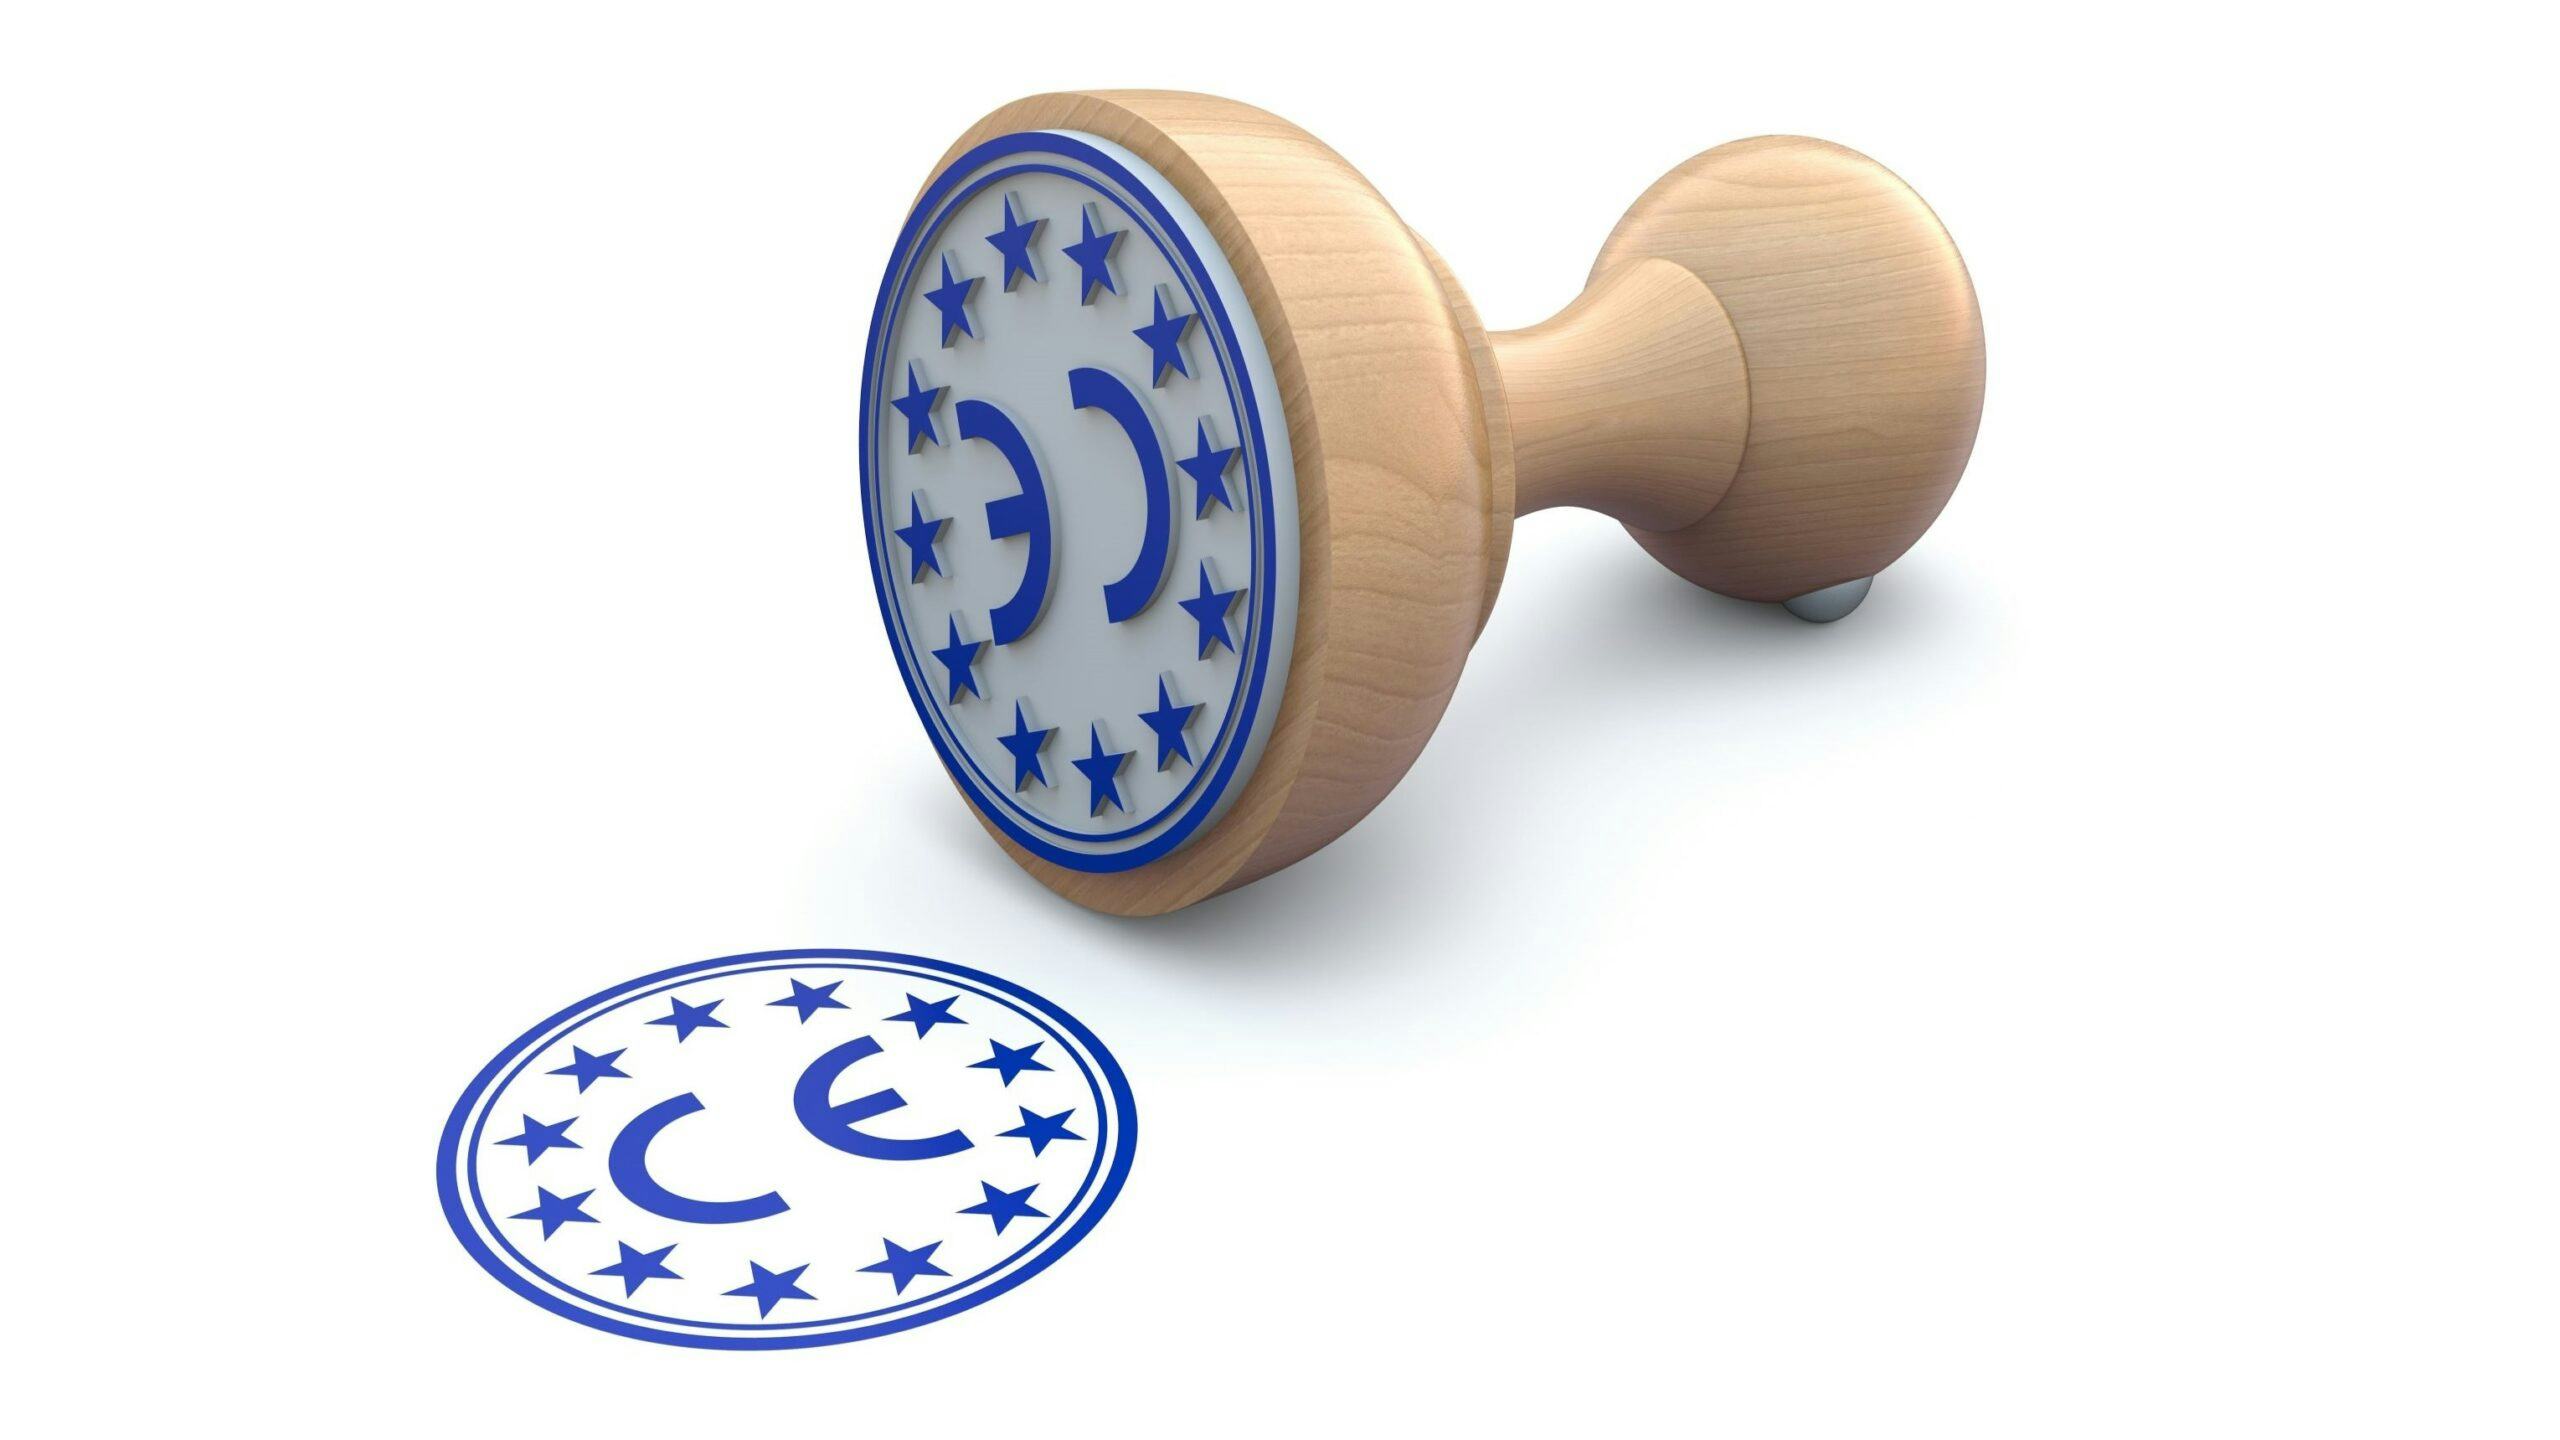 Welke rol speelt CE-markering bij kwaliteitsborging?